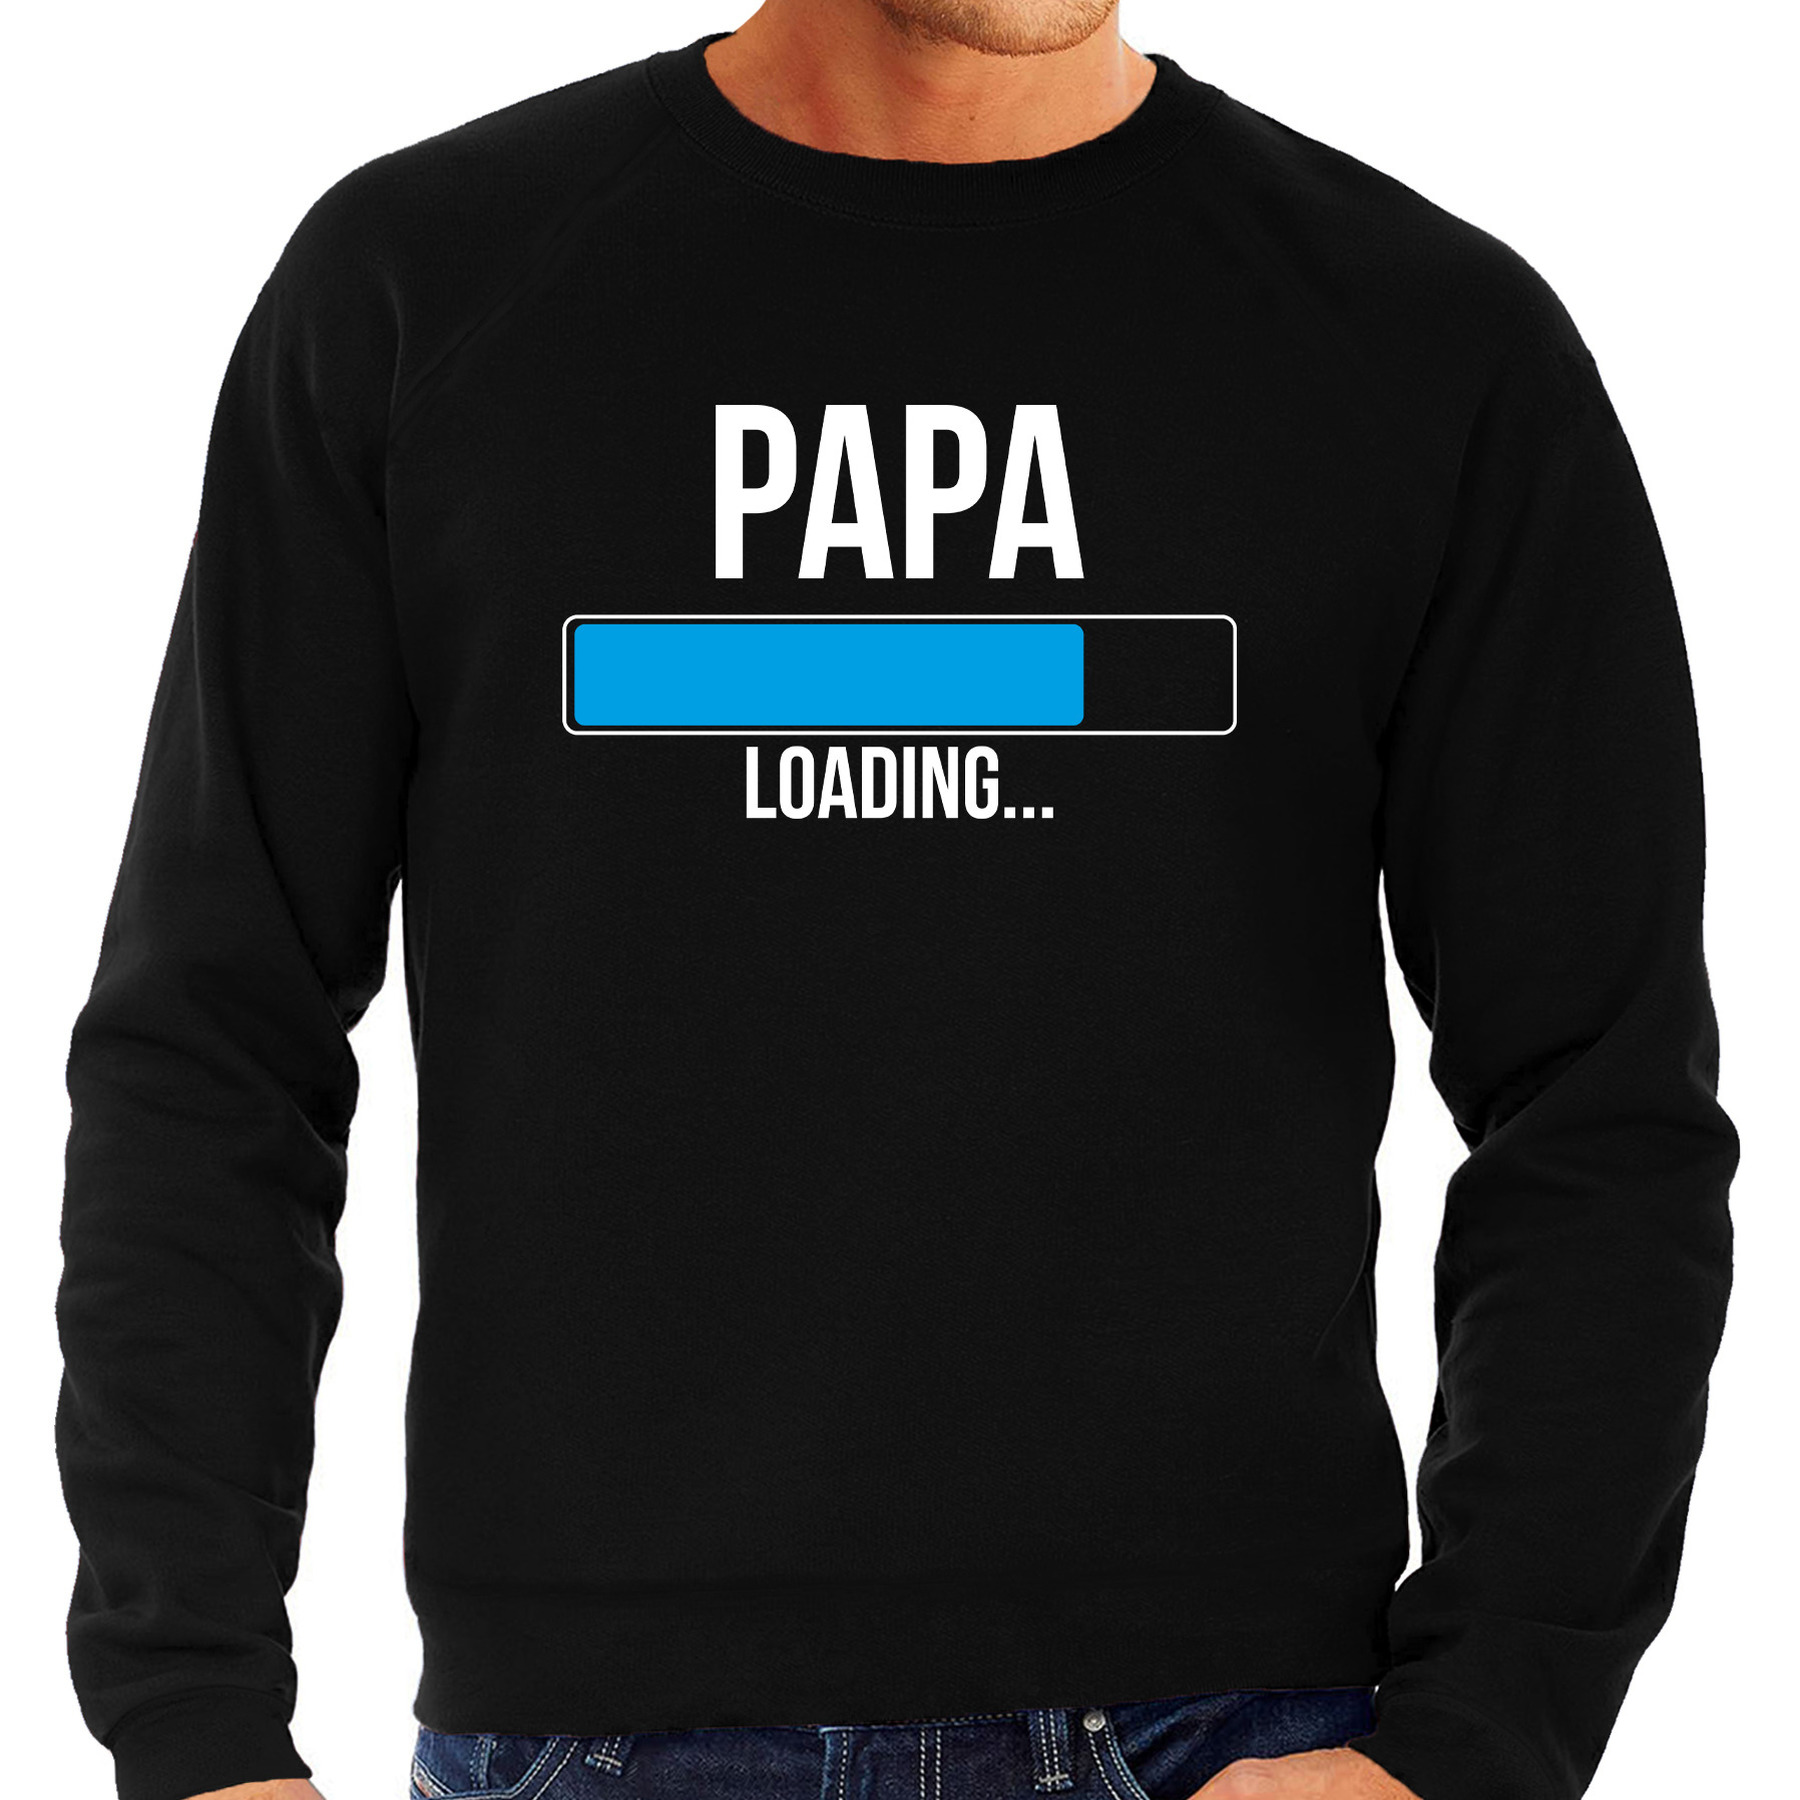 Papa loading sweater / trui zwart voor heren - Aanstaande papa cadeau